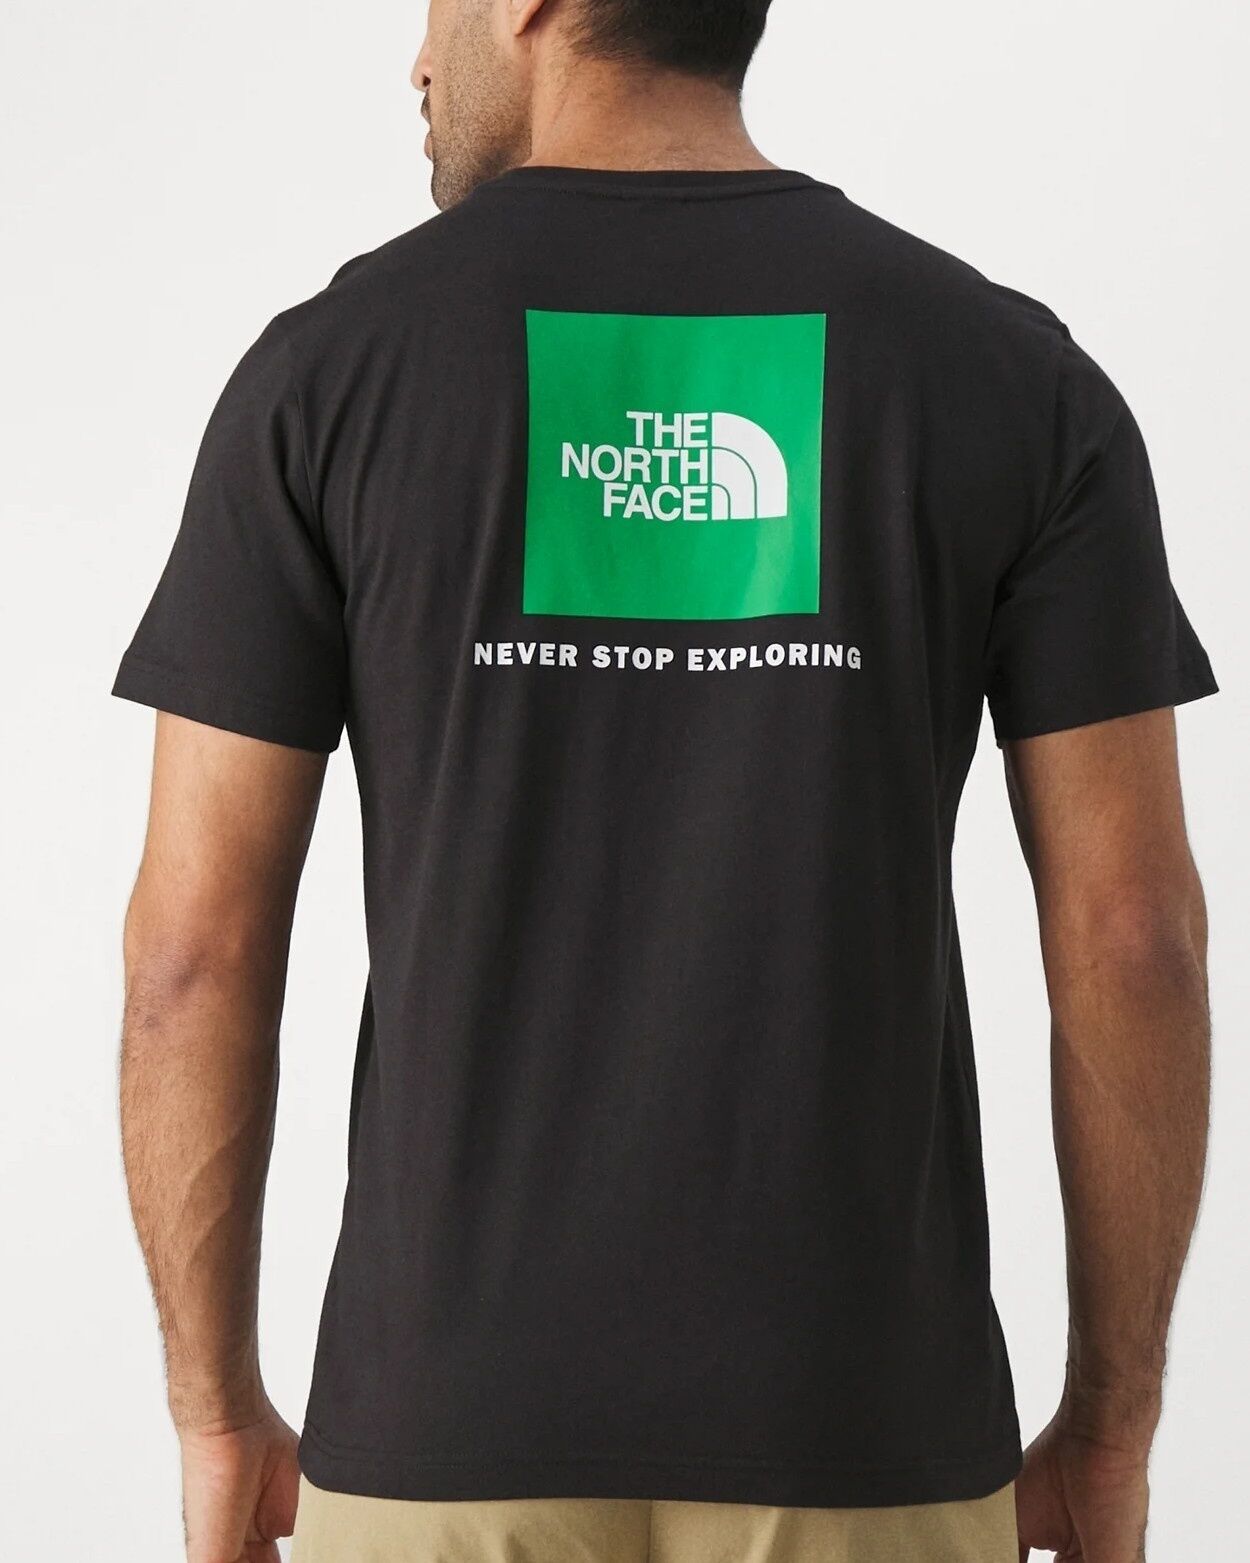 The North Face T-shirt maglia maglietta Girocollo UOMO Nero Optic REDBOX Tee